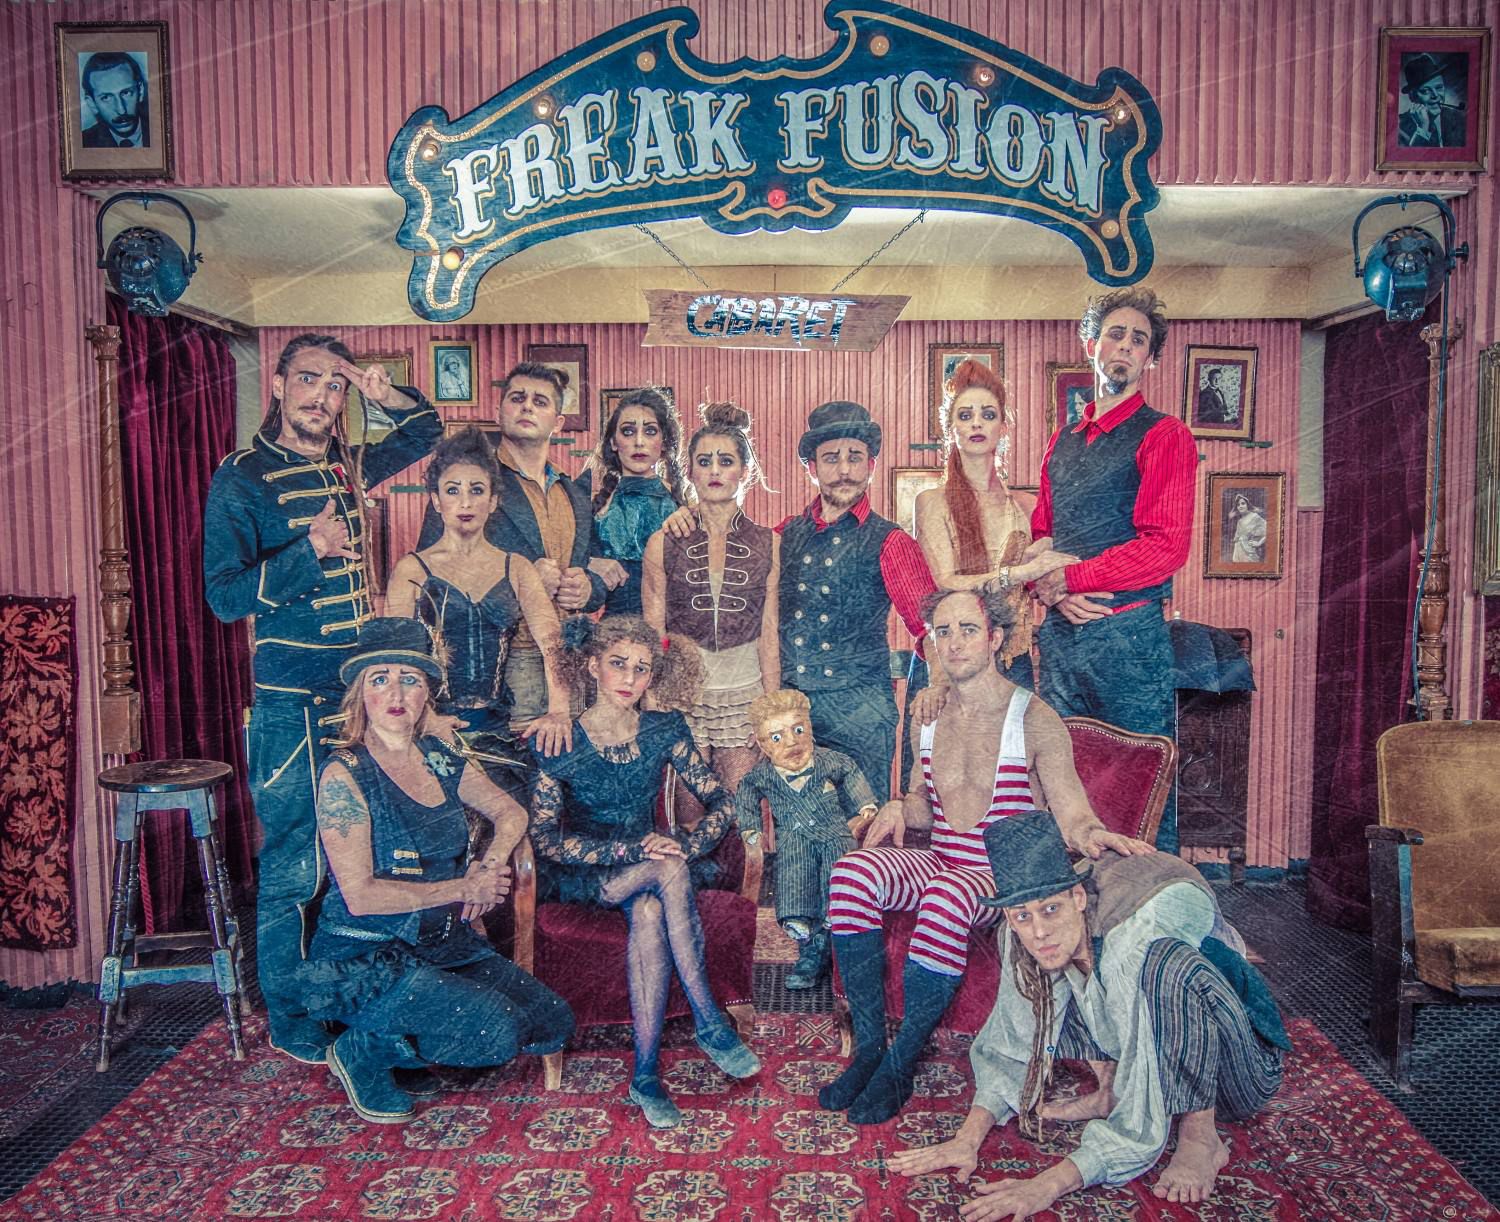 Az illúzió, az emberfeletti és az életveszély keveredik a valósággal: Freak Fusion Cabaret a MU Színházban